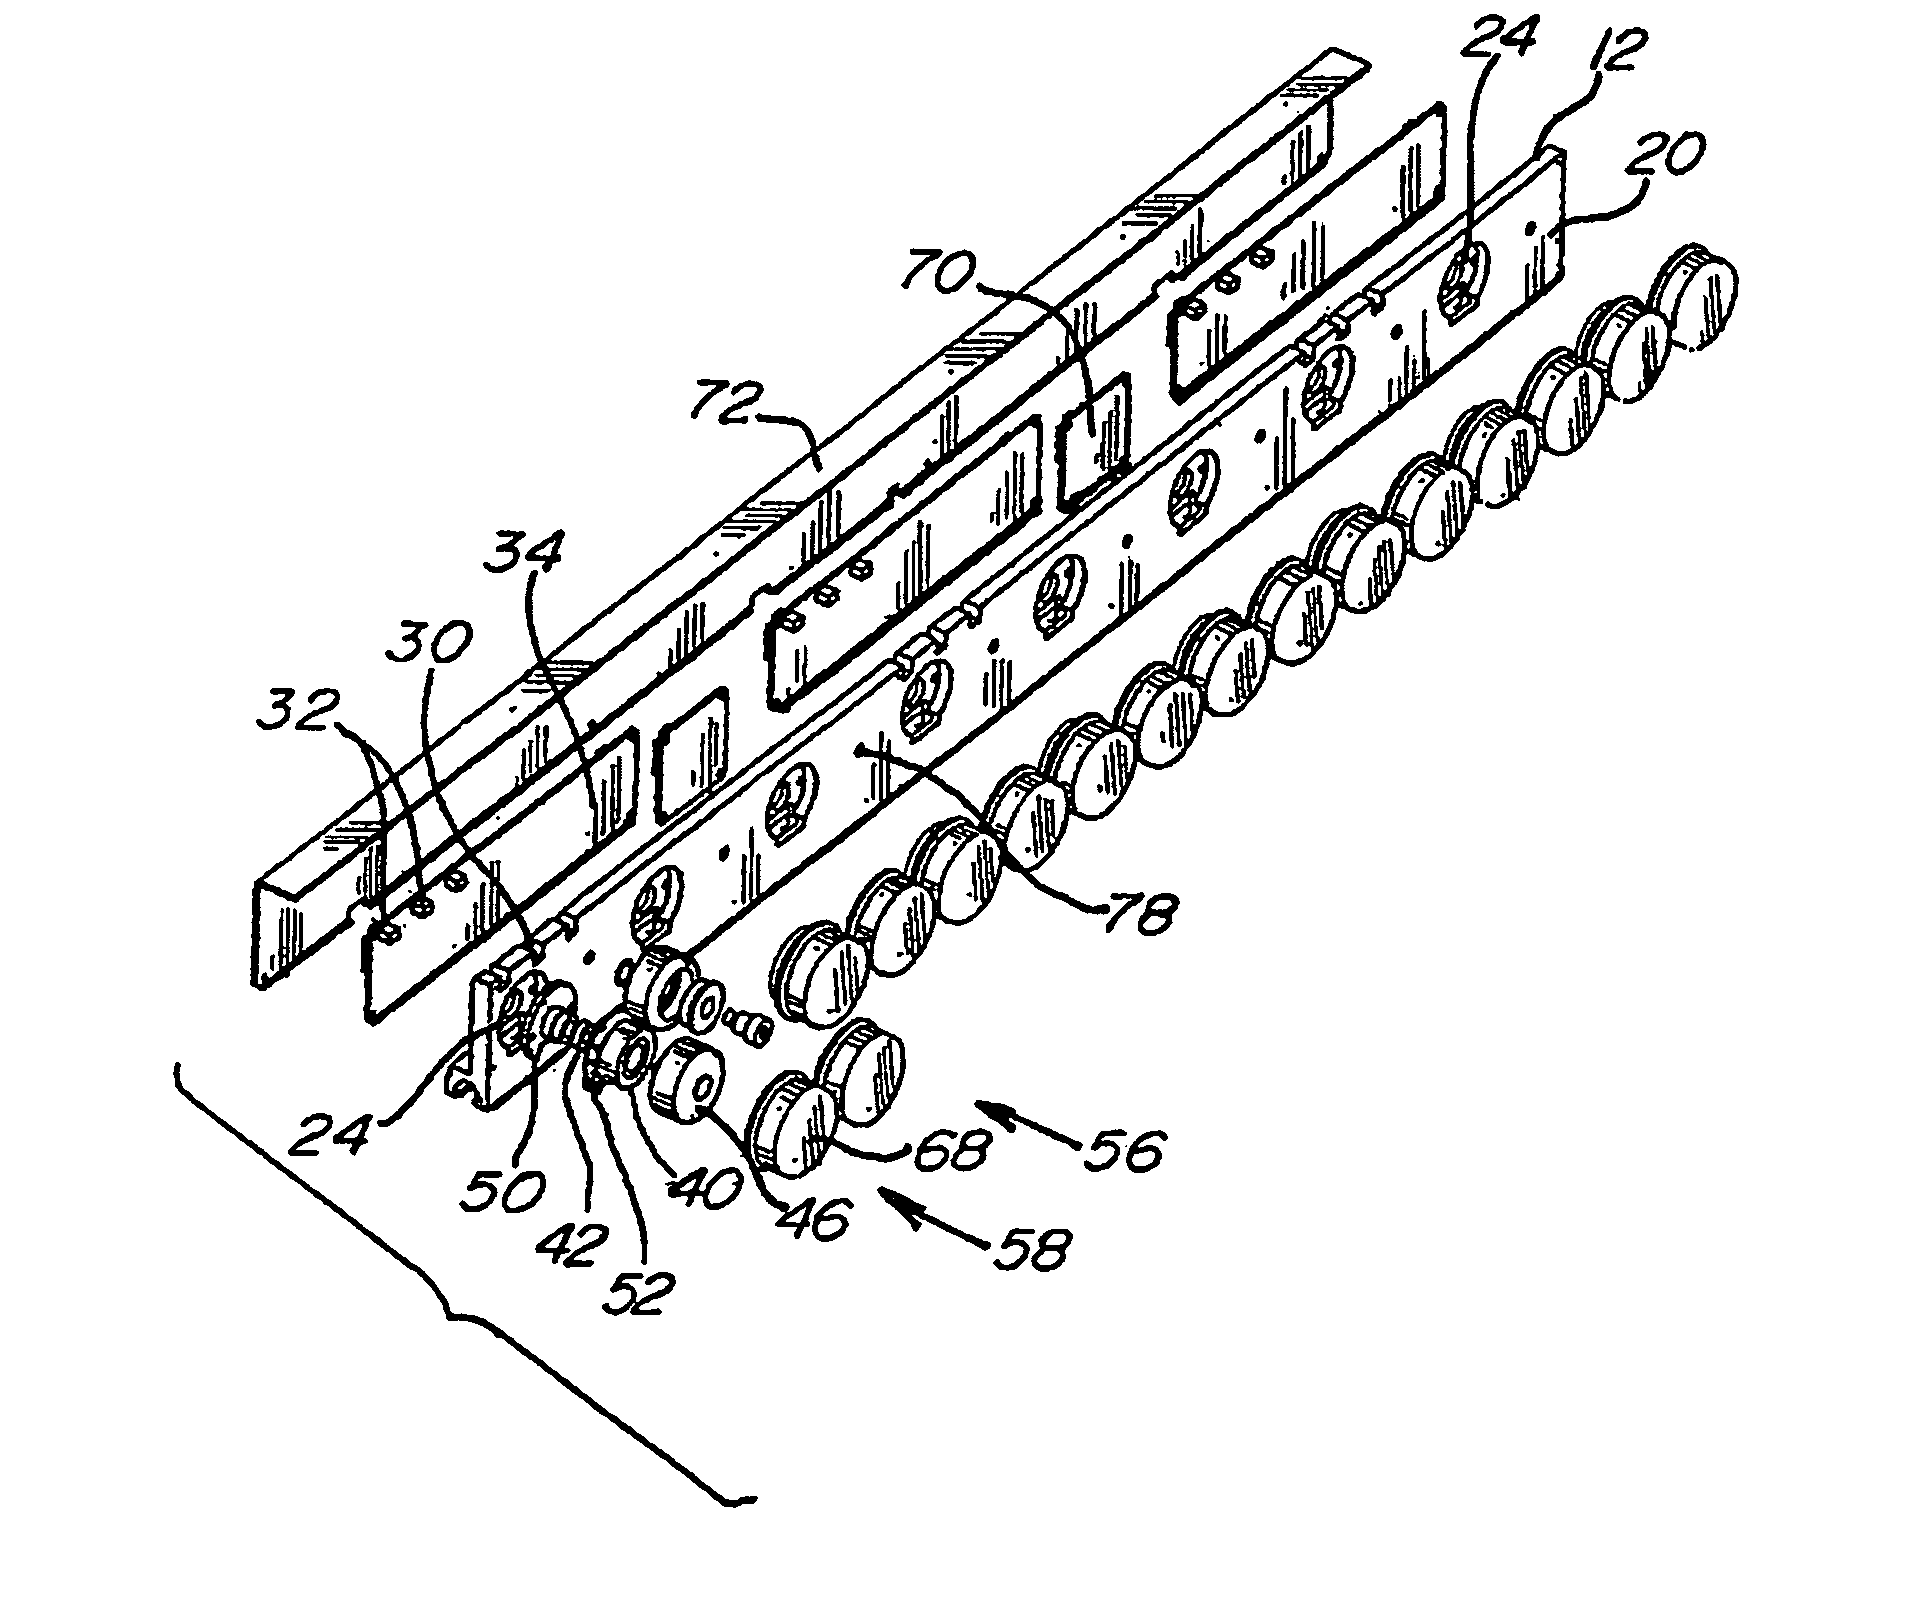 Conveyor assembly